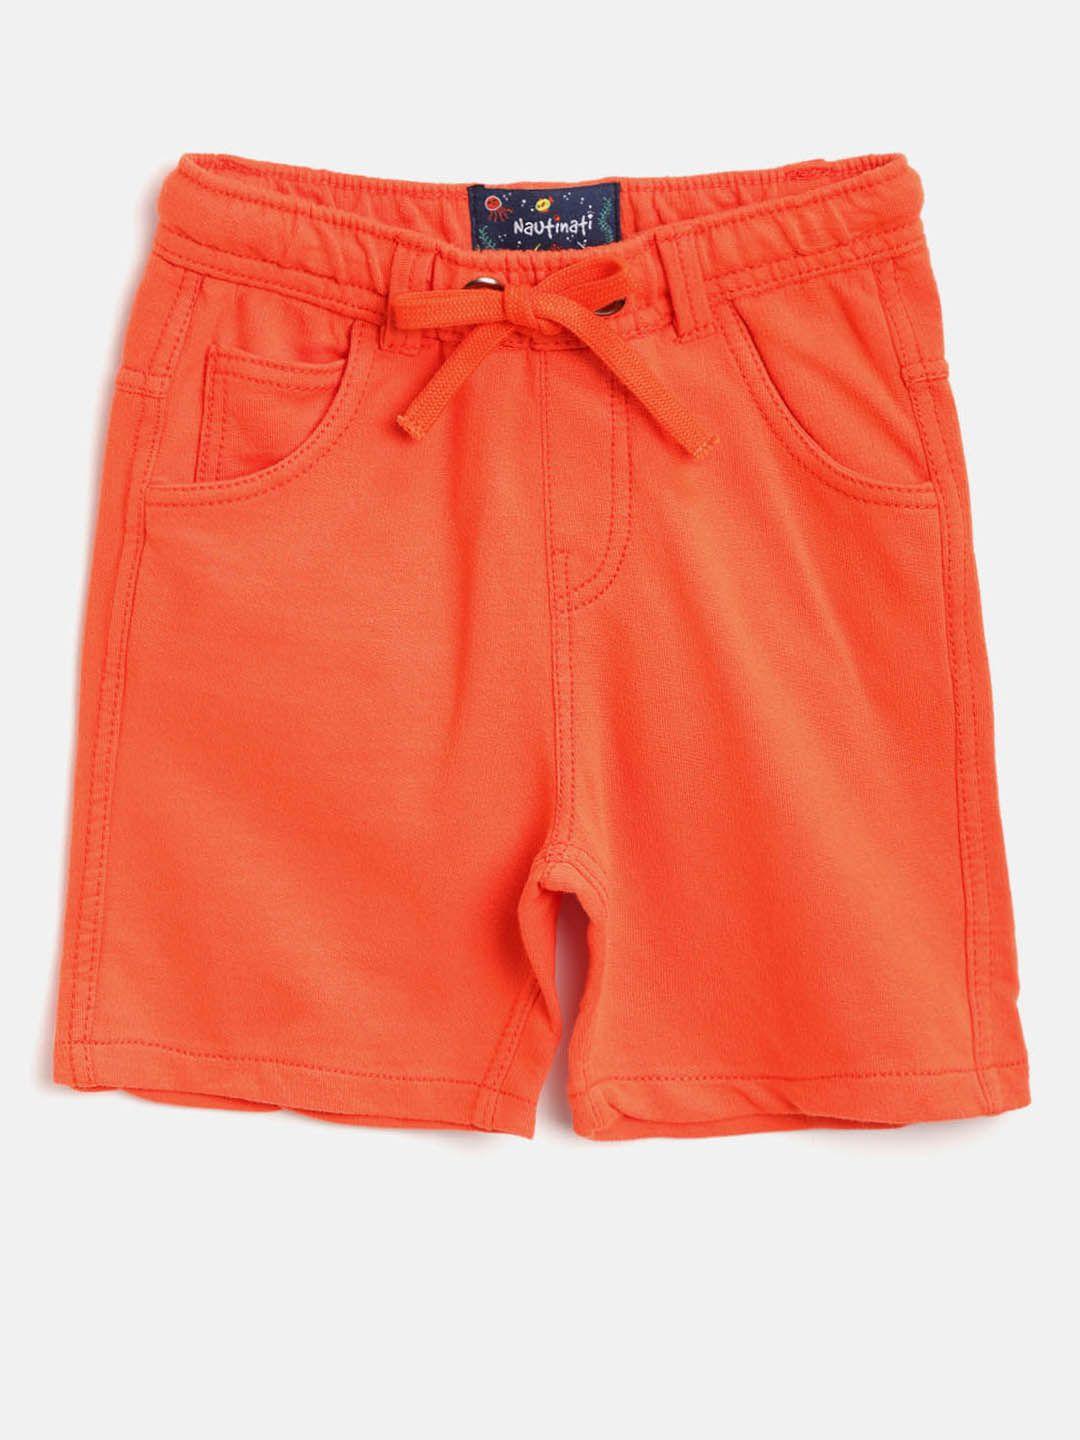 nauti nati boys orange solid regular fit shorts